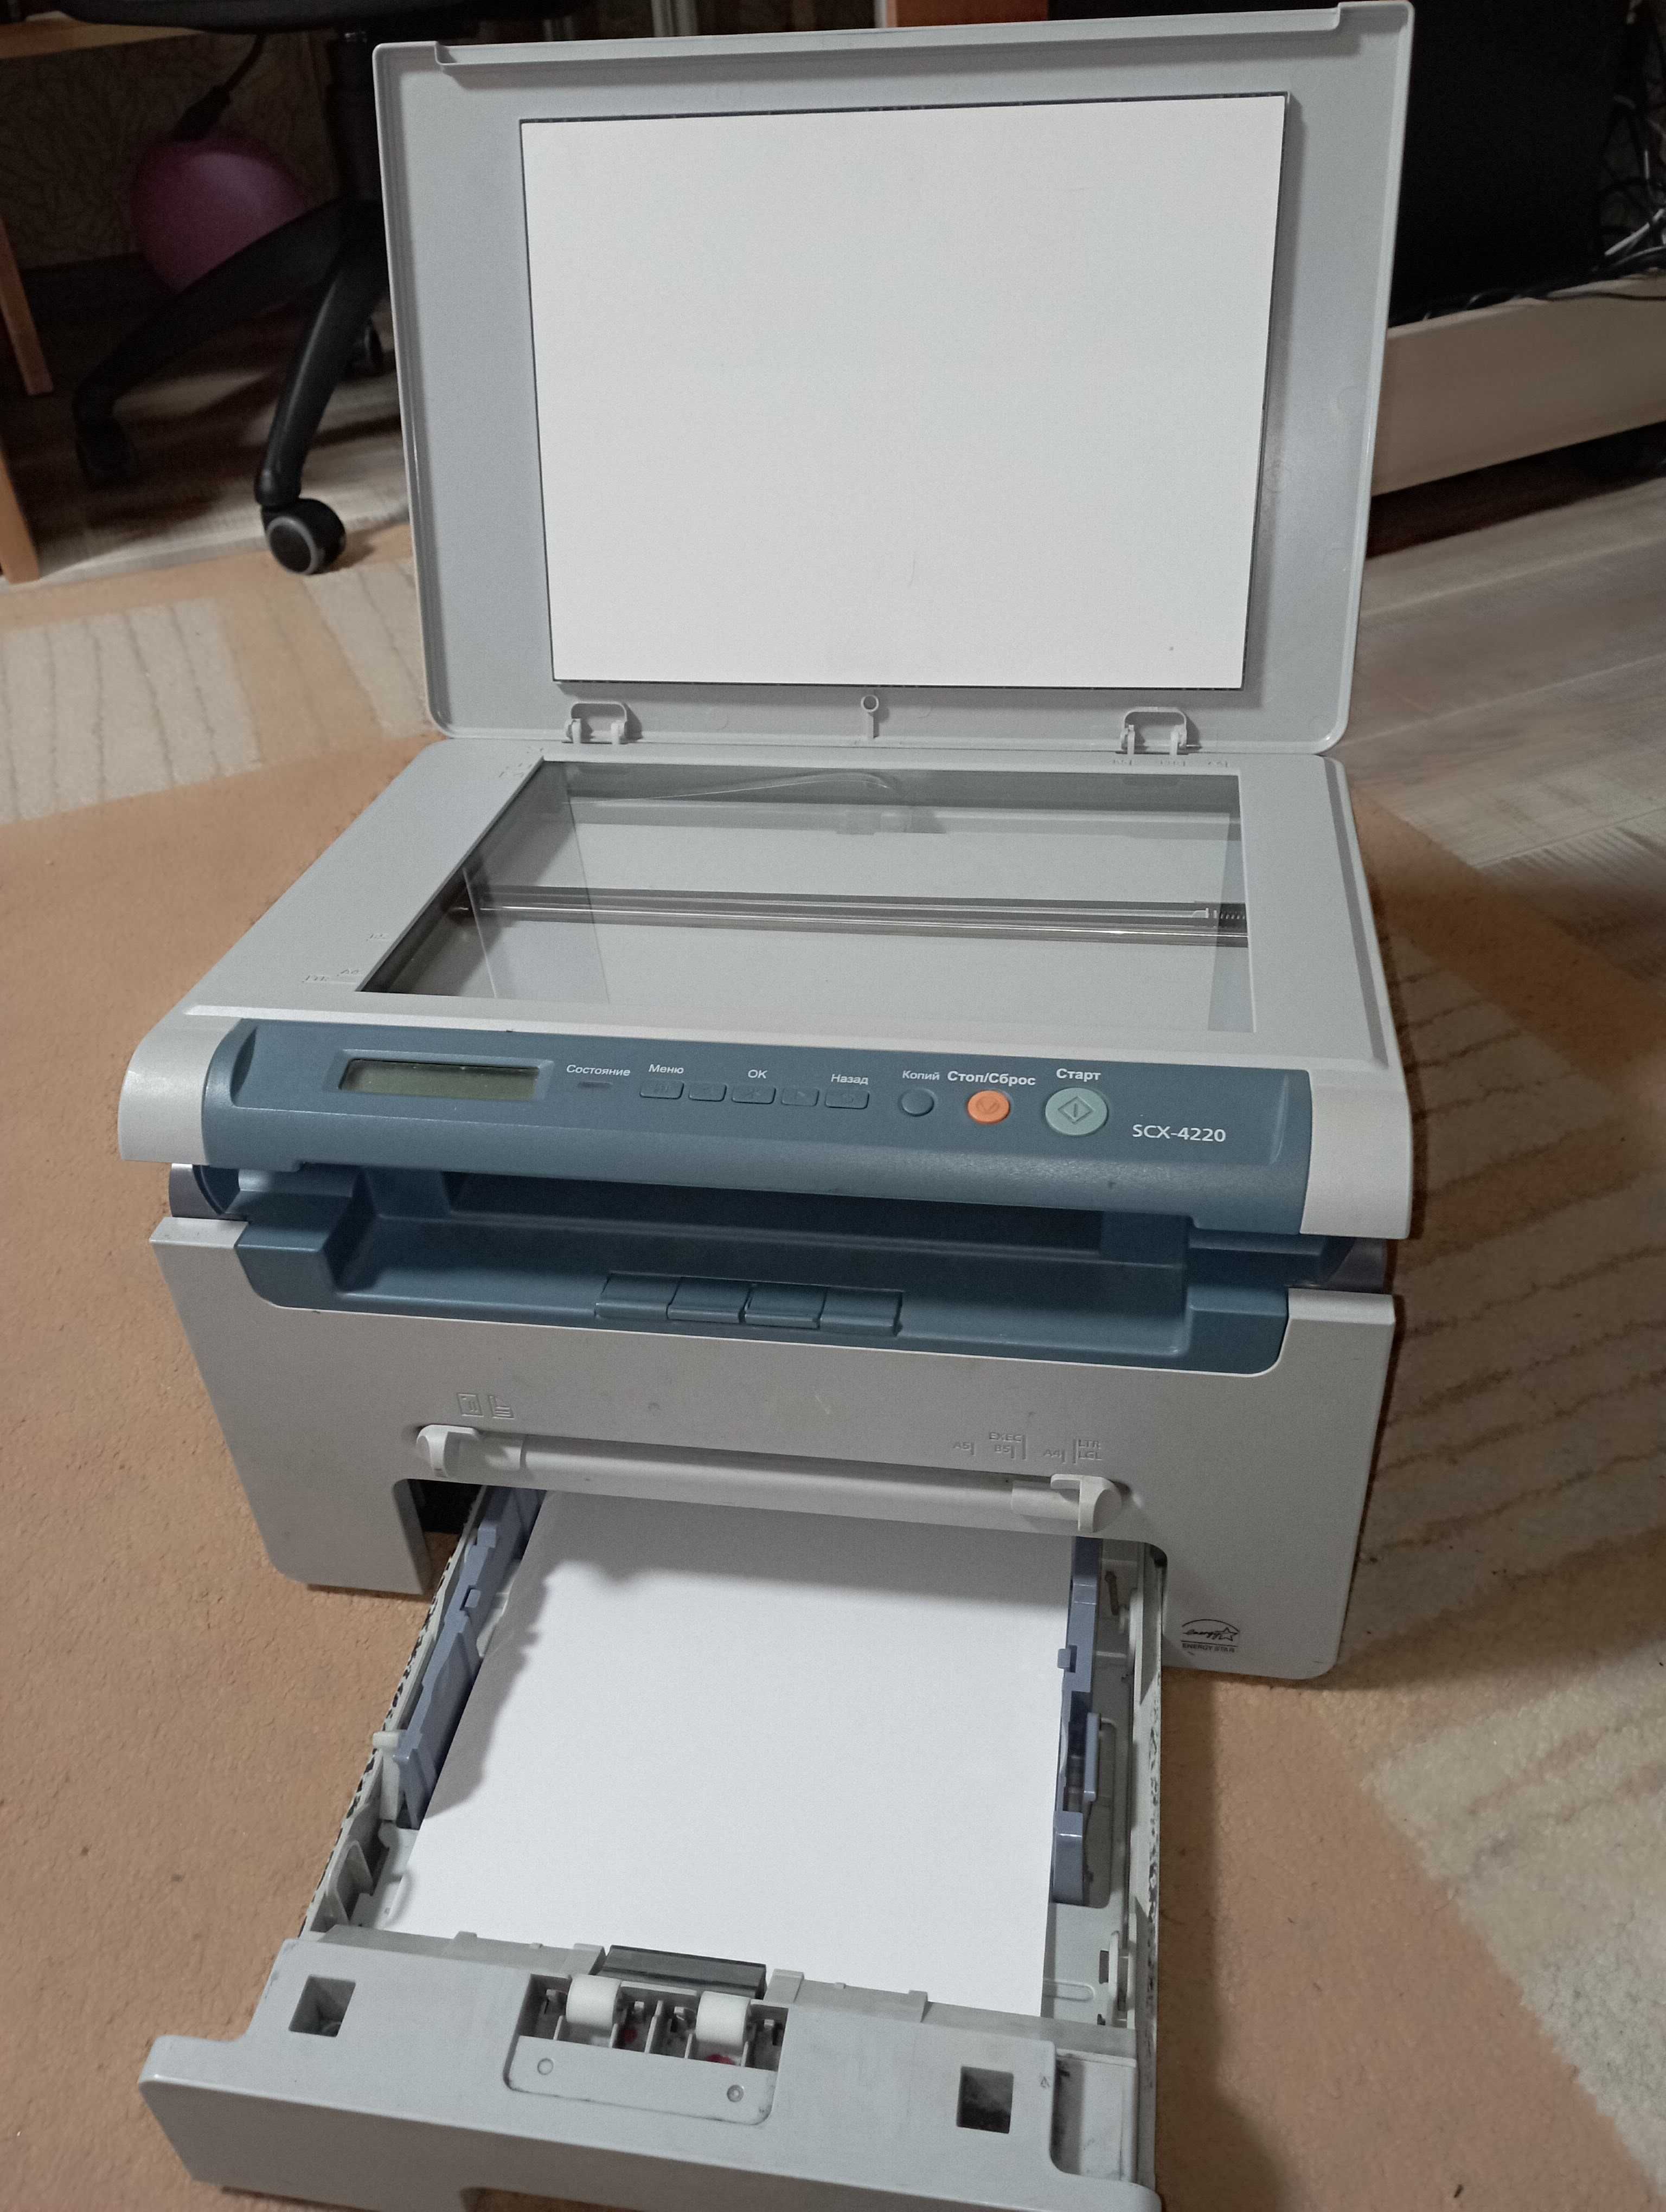 Ксерокс+принтер+сканер 3в1 SAMSUNG SCX4220